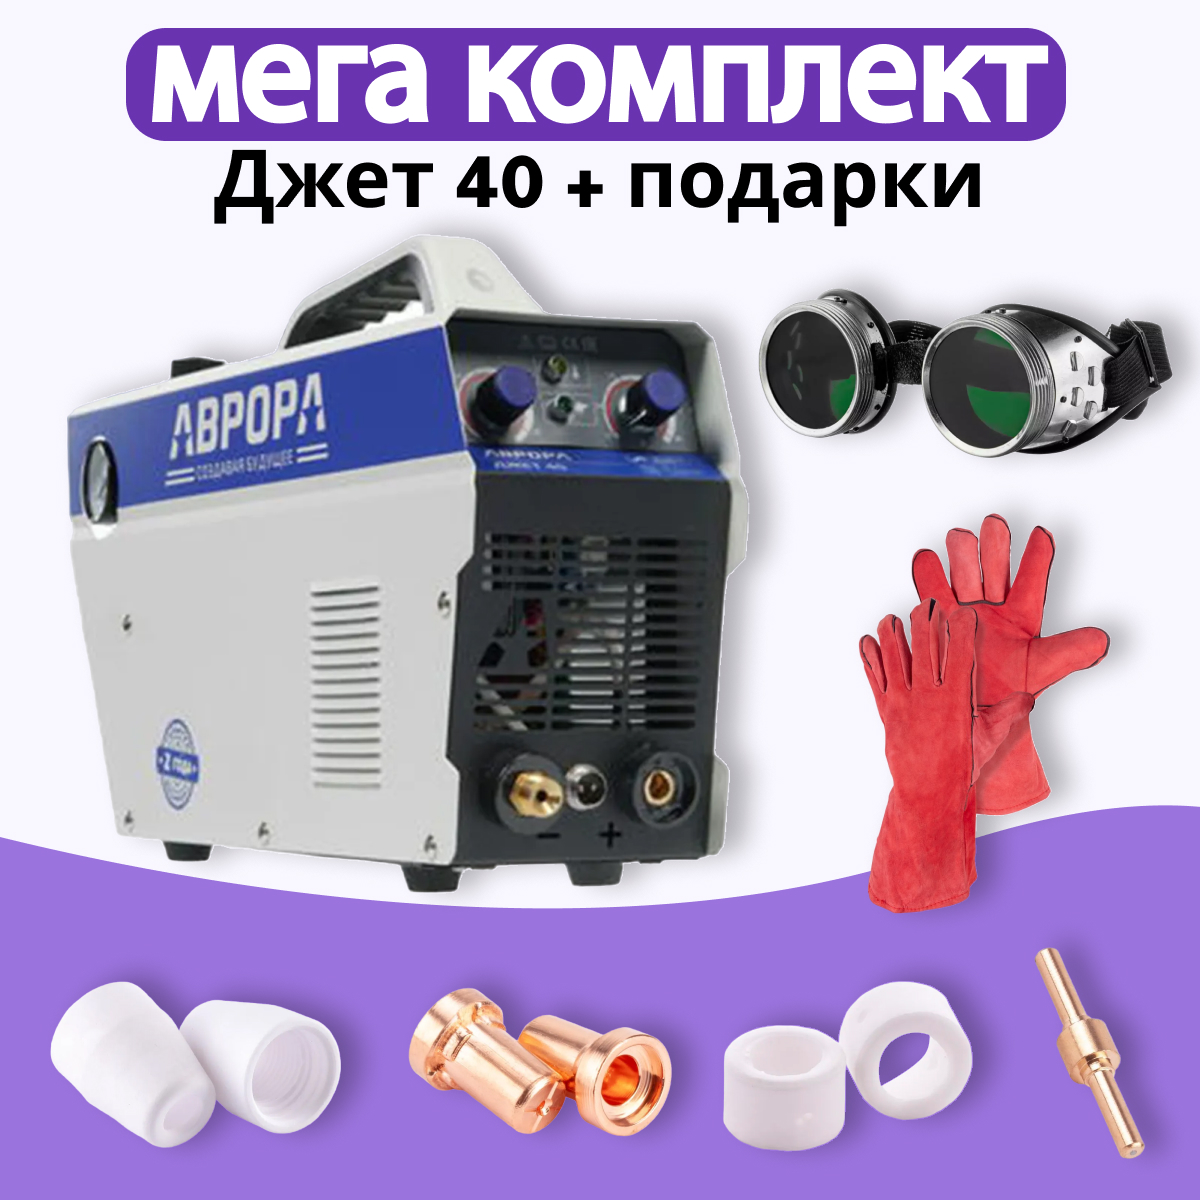 Аппарат плазменной резки АВРОРА Джет 40 + МЕГА комплект